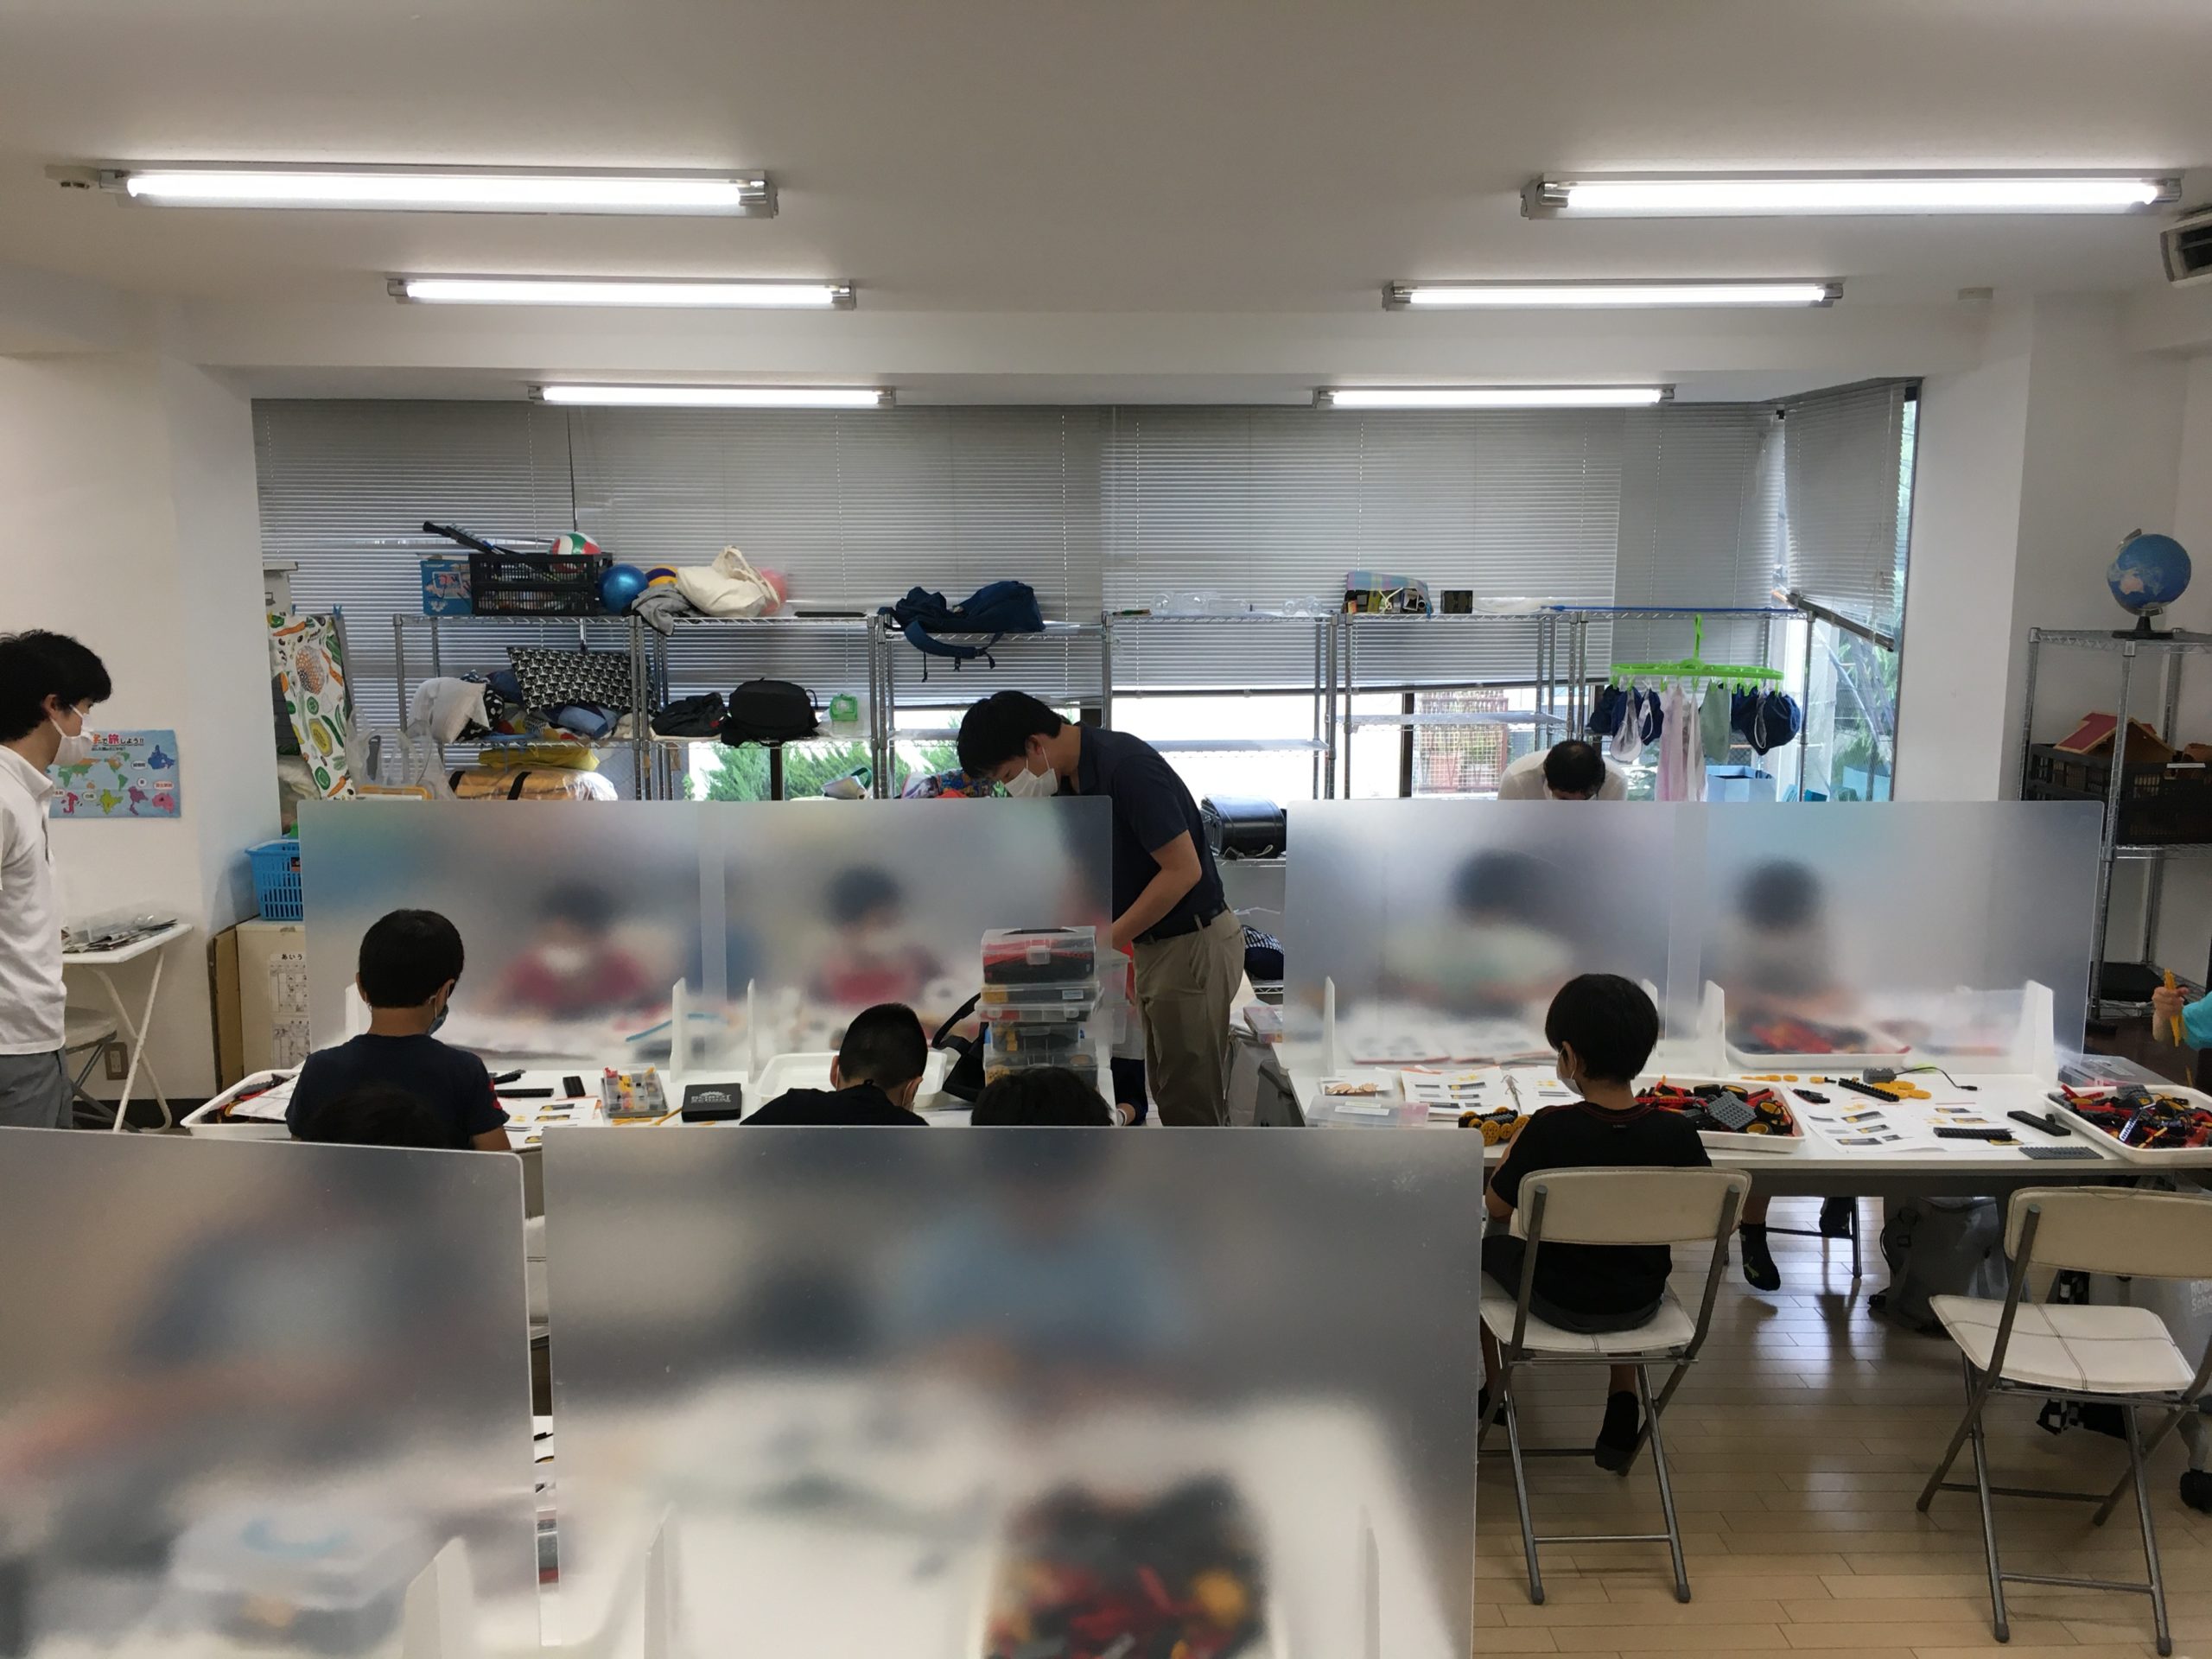 お知らせ 【ロボット教室】久しぶりの合同授業のイメージサムネイル画像